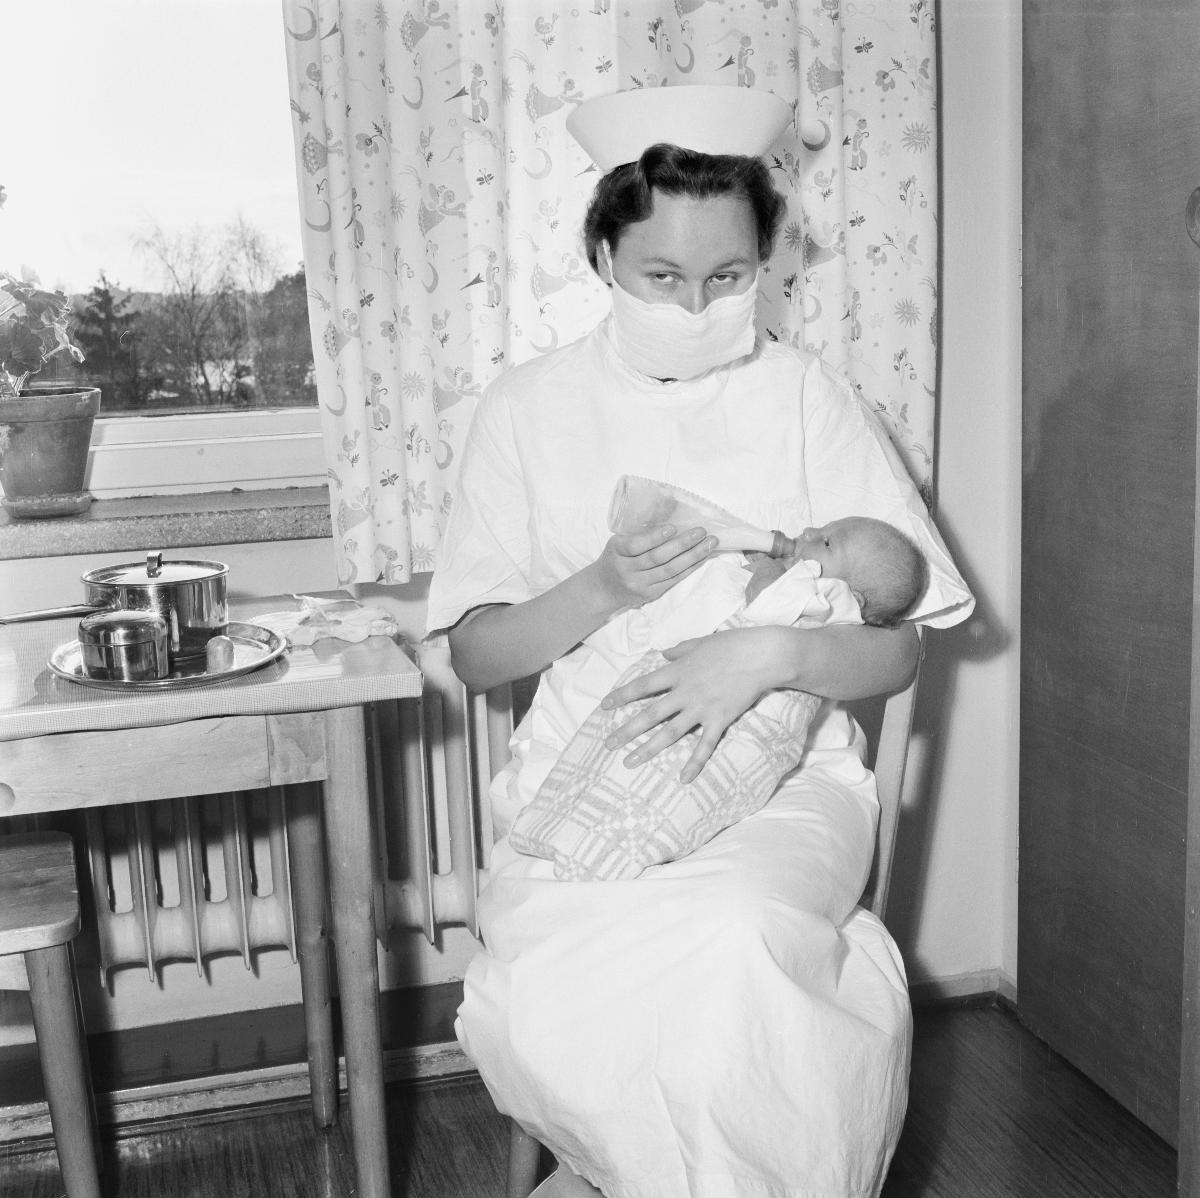 Työasuun pukeutunut hoitaja istuu ikkunan edessä seisovan pöydän ääressä syöttämässä vauvaa tuttipullolla. Hoitaja katsoo kameraan, ja hänellä on suu-nenäsuojus kasvoillaan.